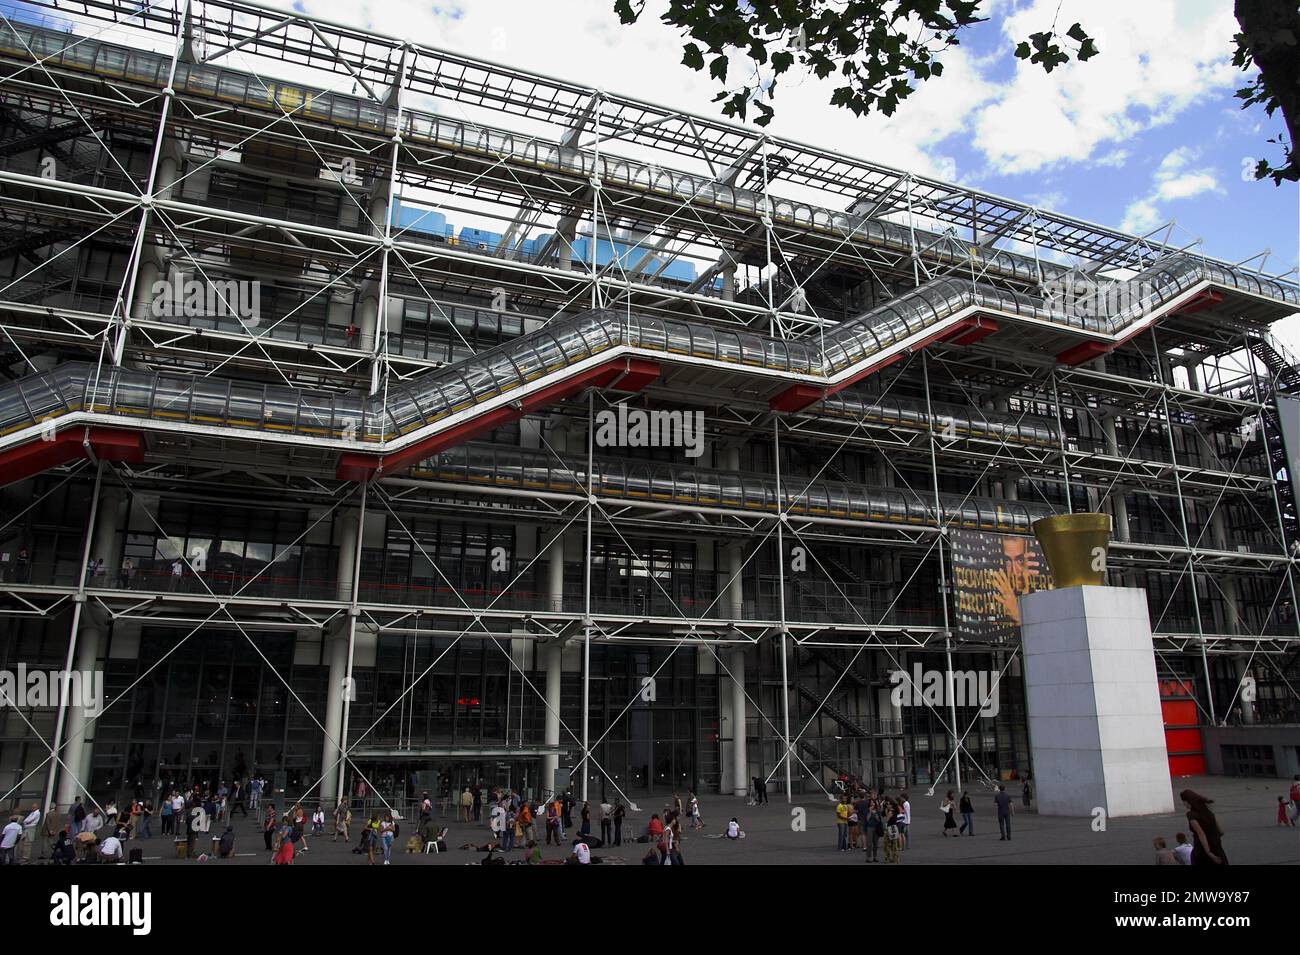 Paryż, Paris, Francja, France, Frankreich, Centre national d'art et de culture Georges-Pompidou; National Center for Art and Culture Georges Pompidou Stock Photo